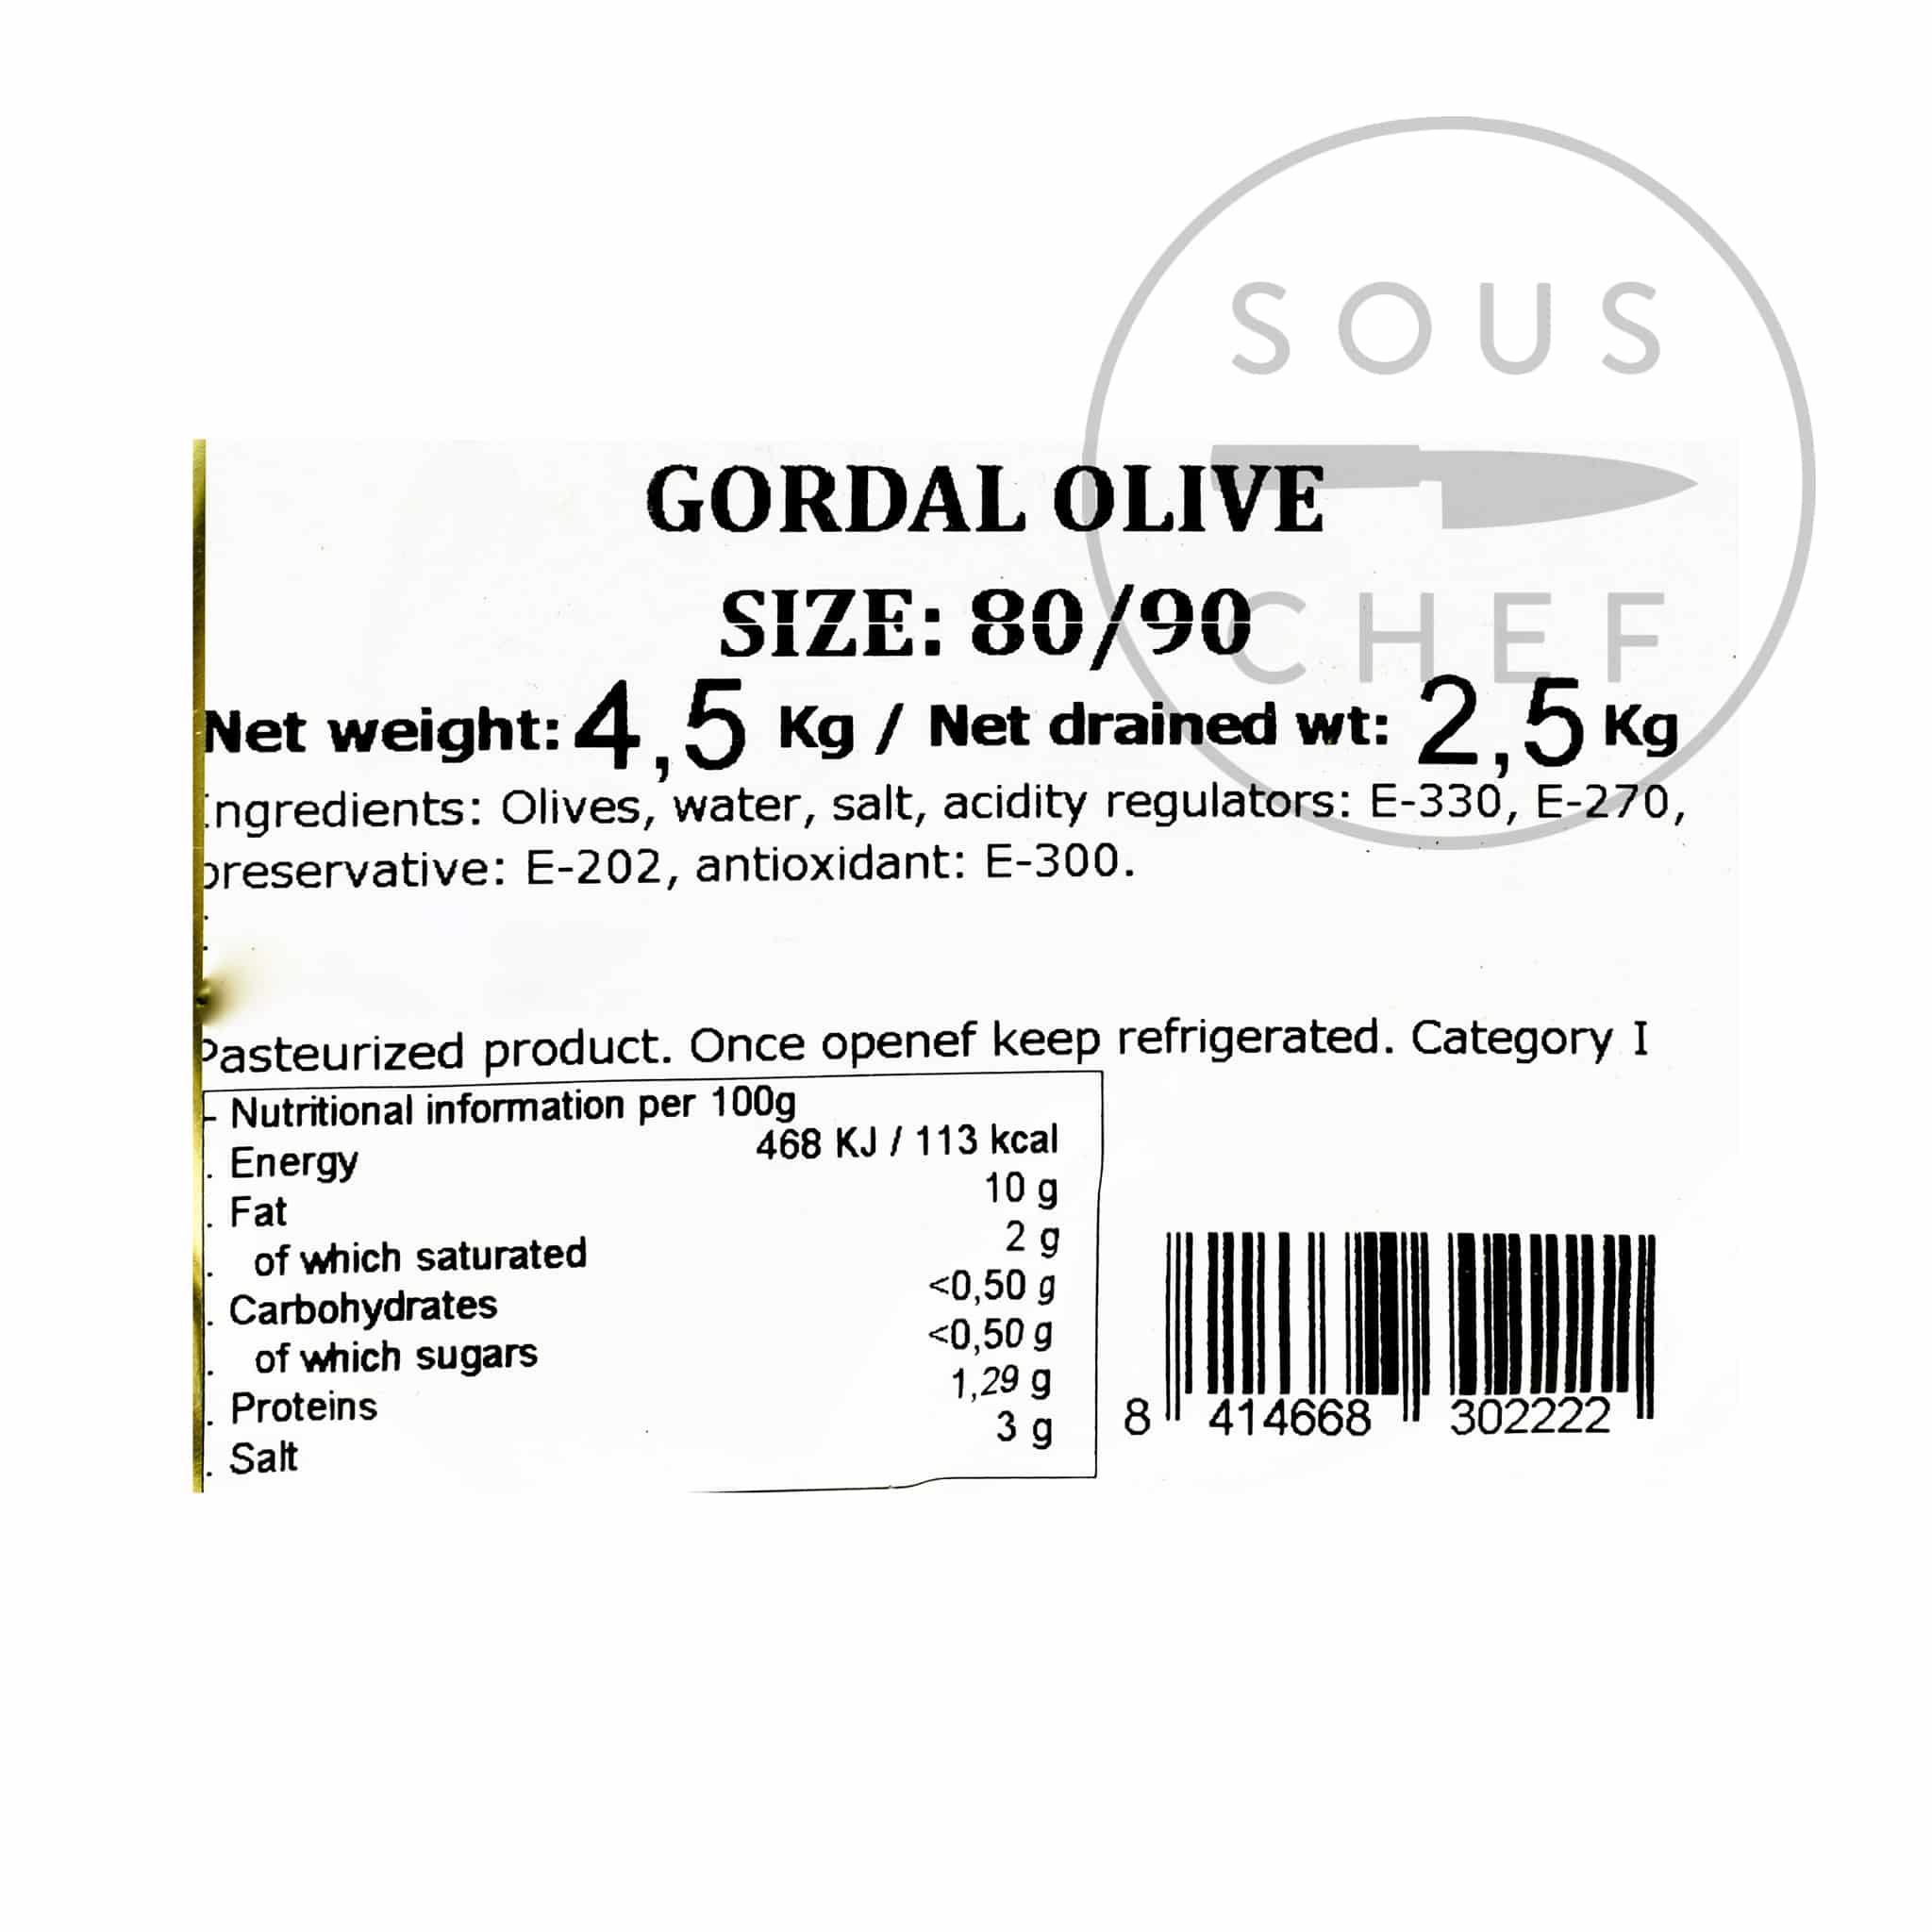 Whole Gordal Olives 2.5kg